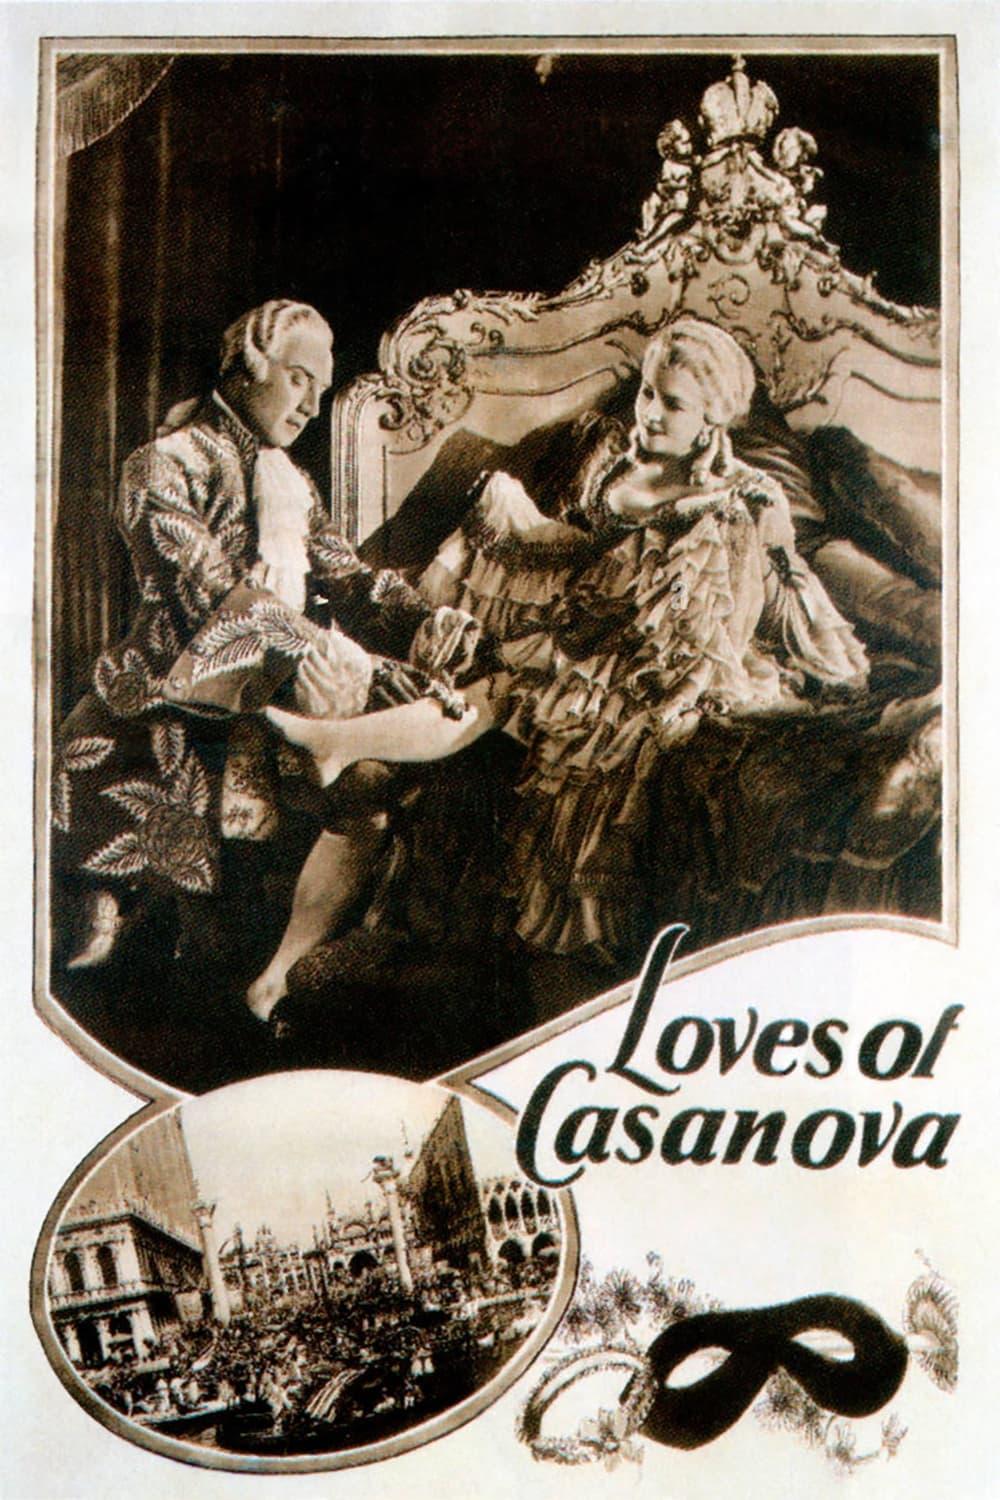 Loves of Casanova poster